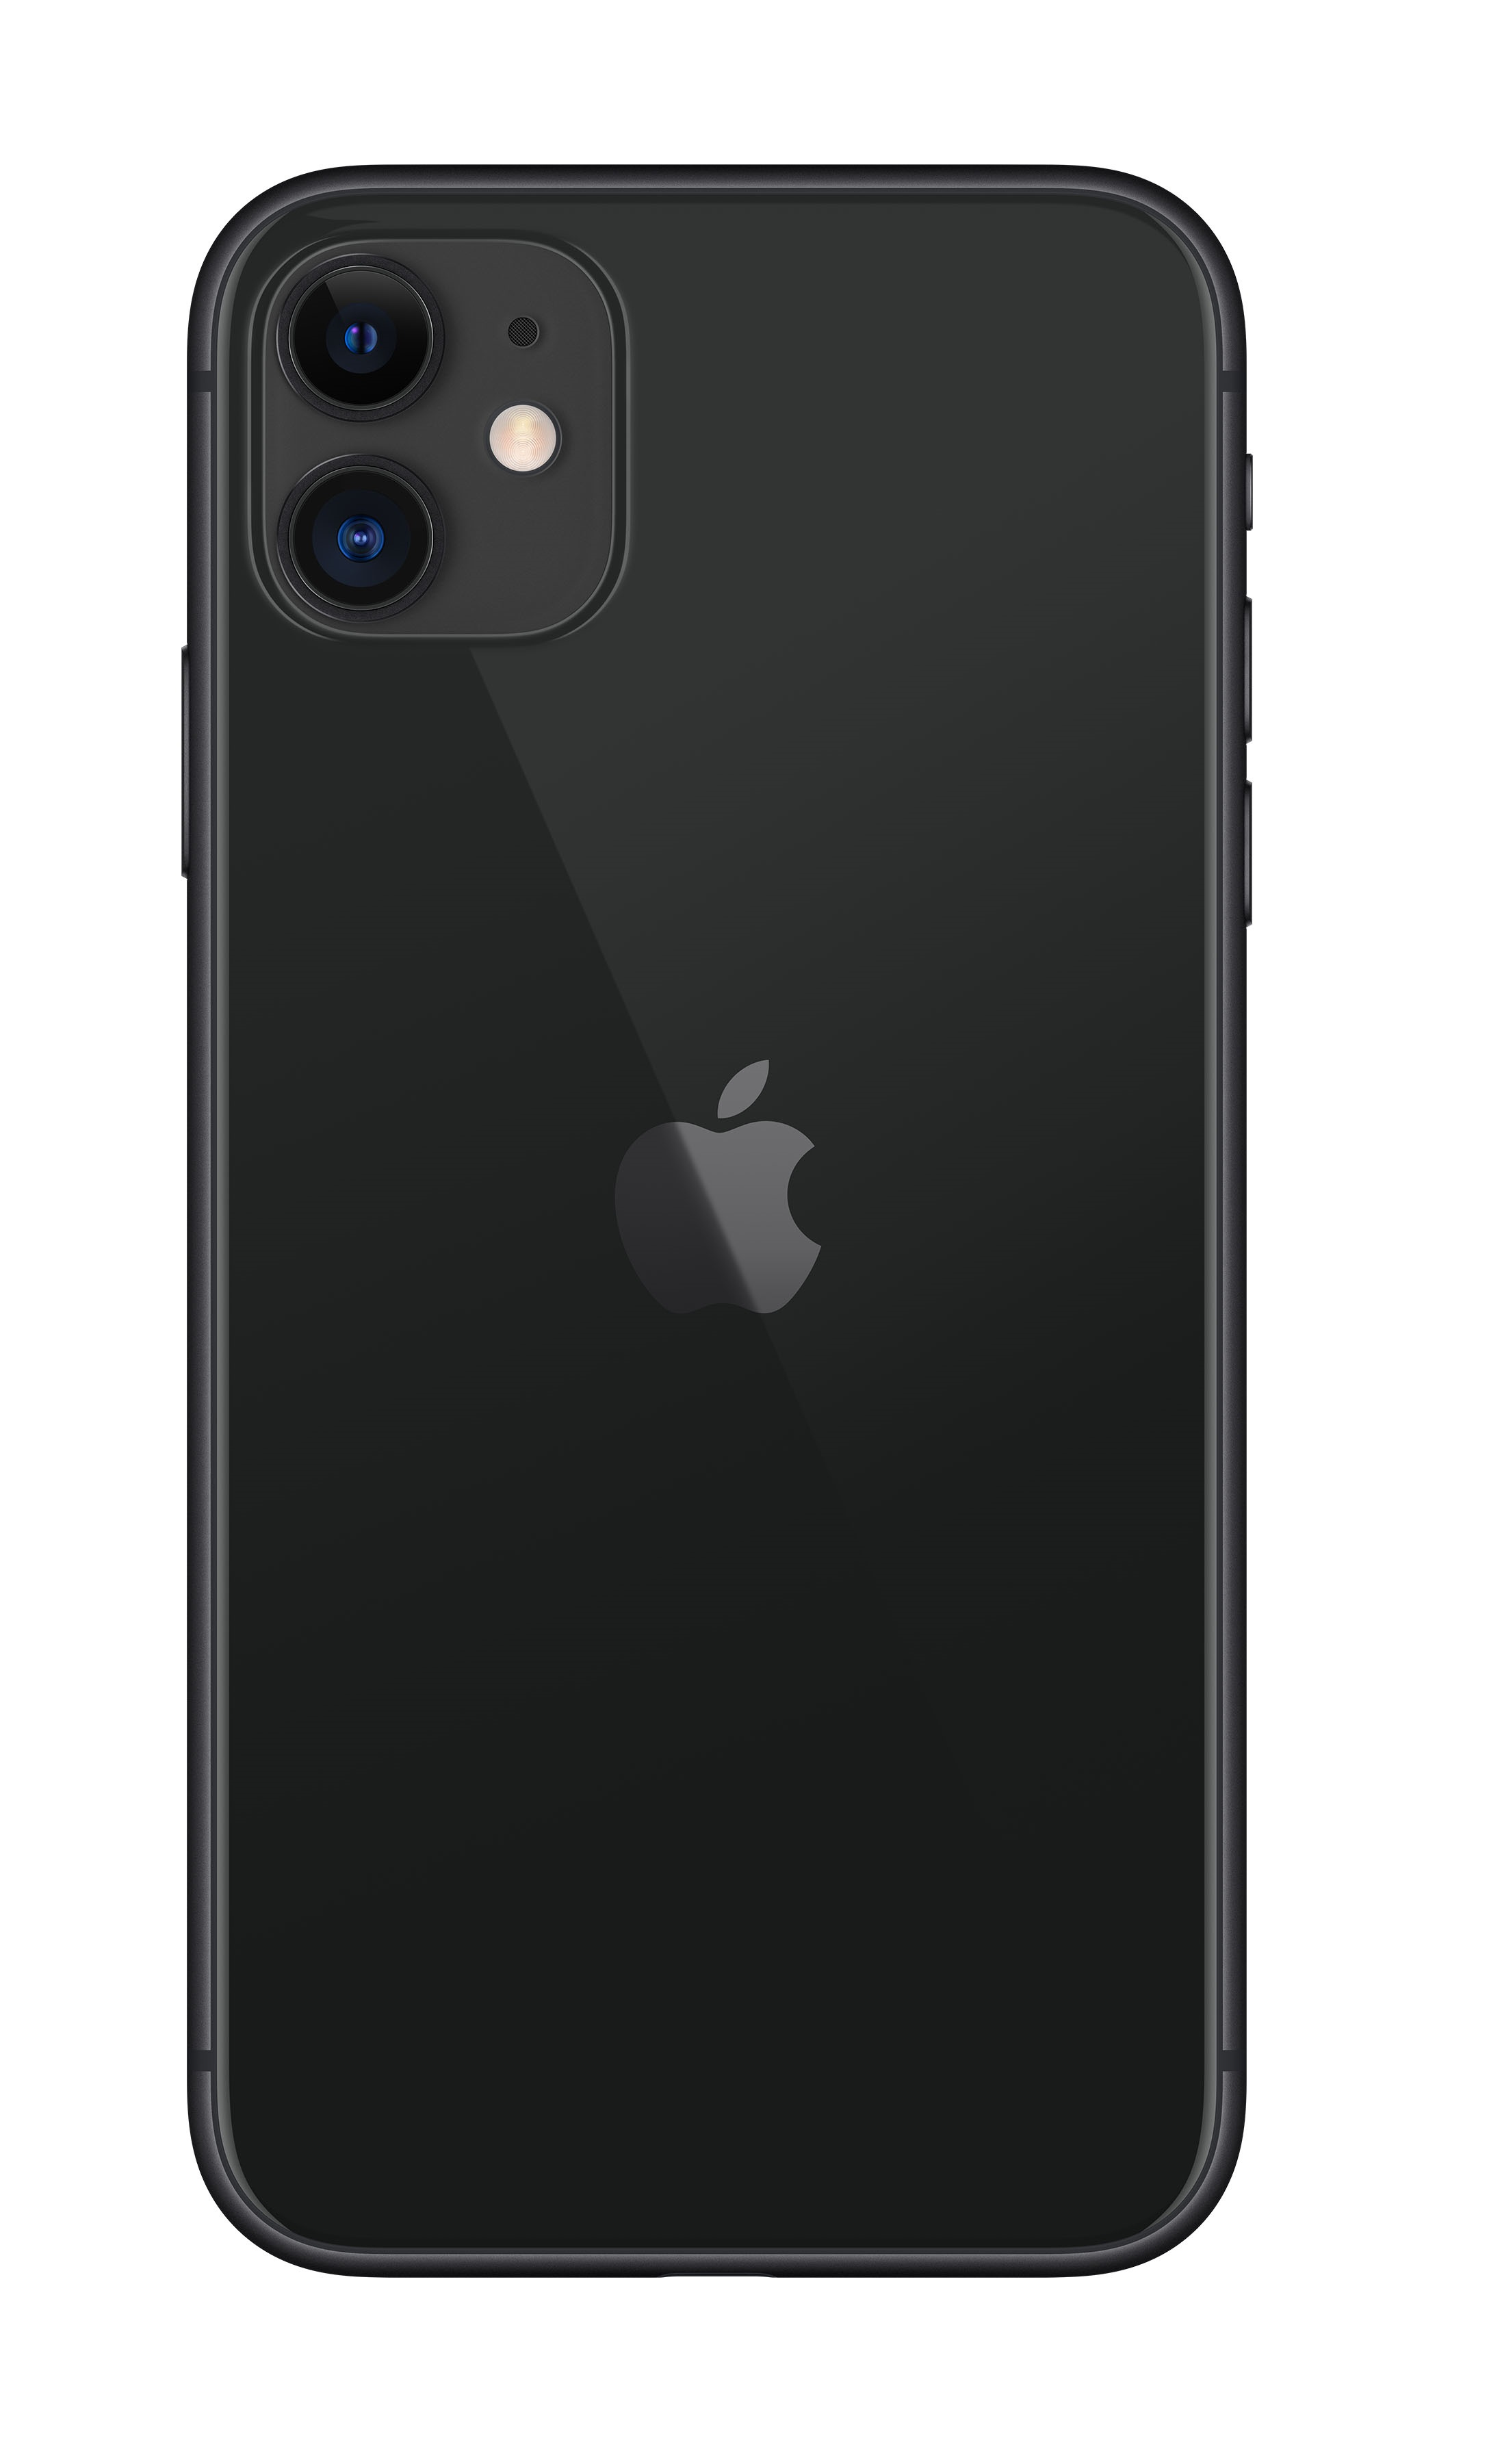 iPhone 11 256GB Black Apple - MWM72QL/A